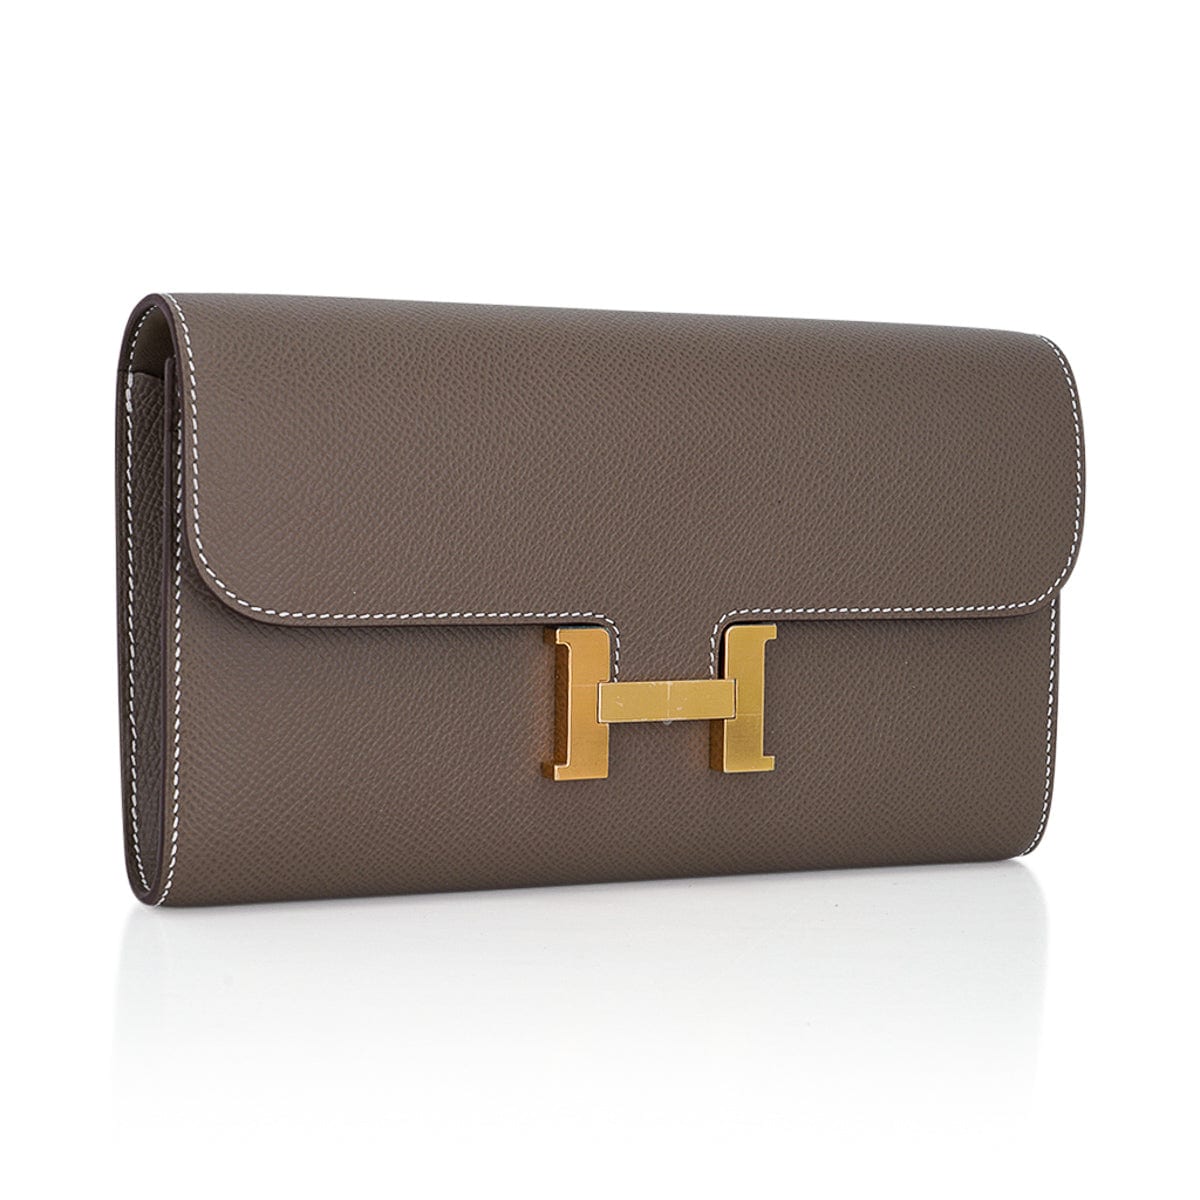 Hermès Constance-To-Go Handbag